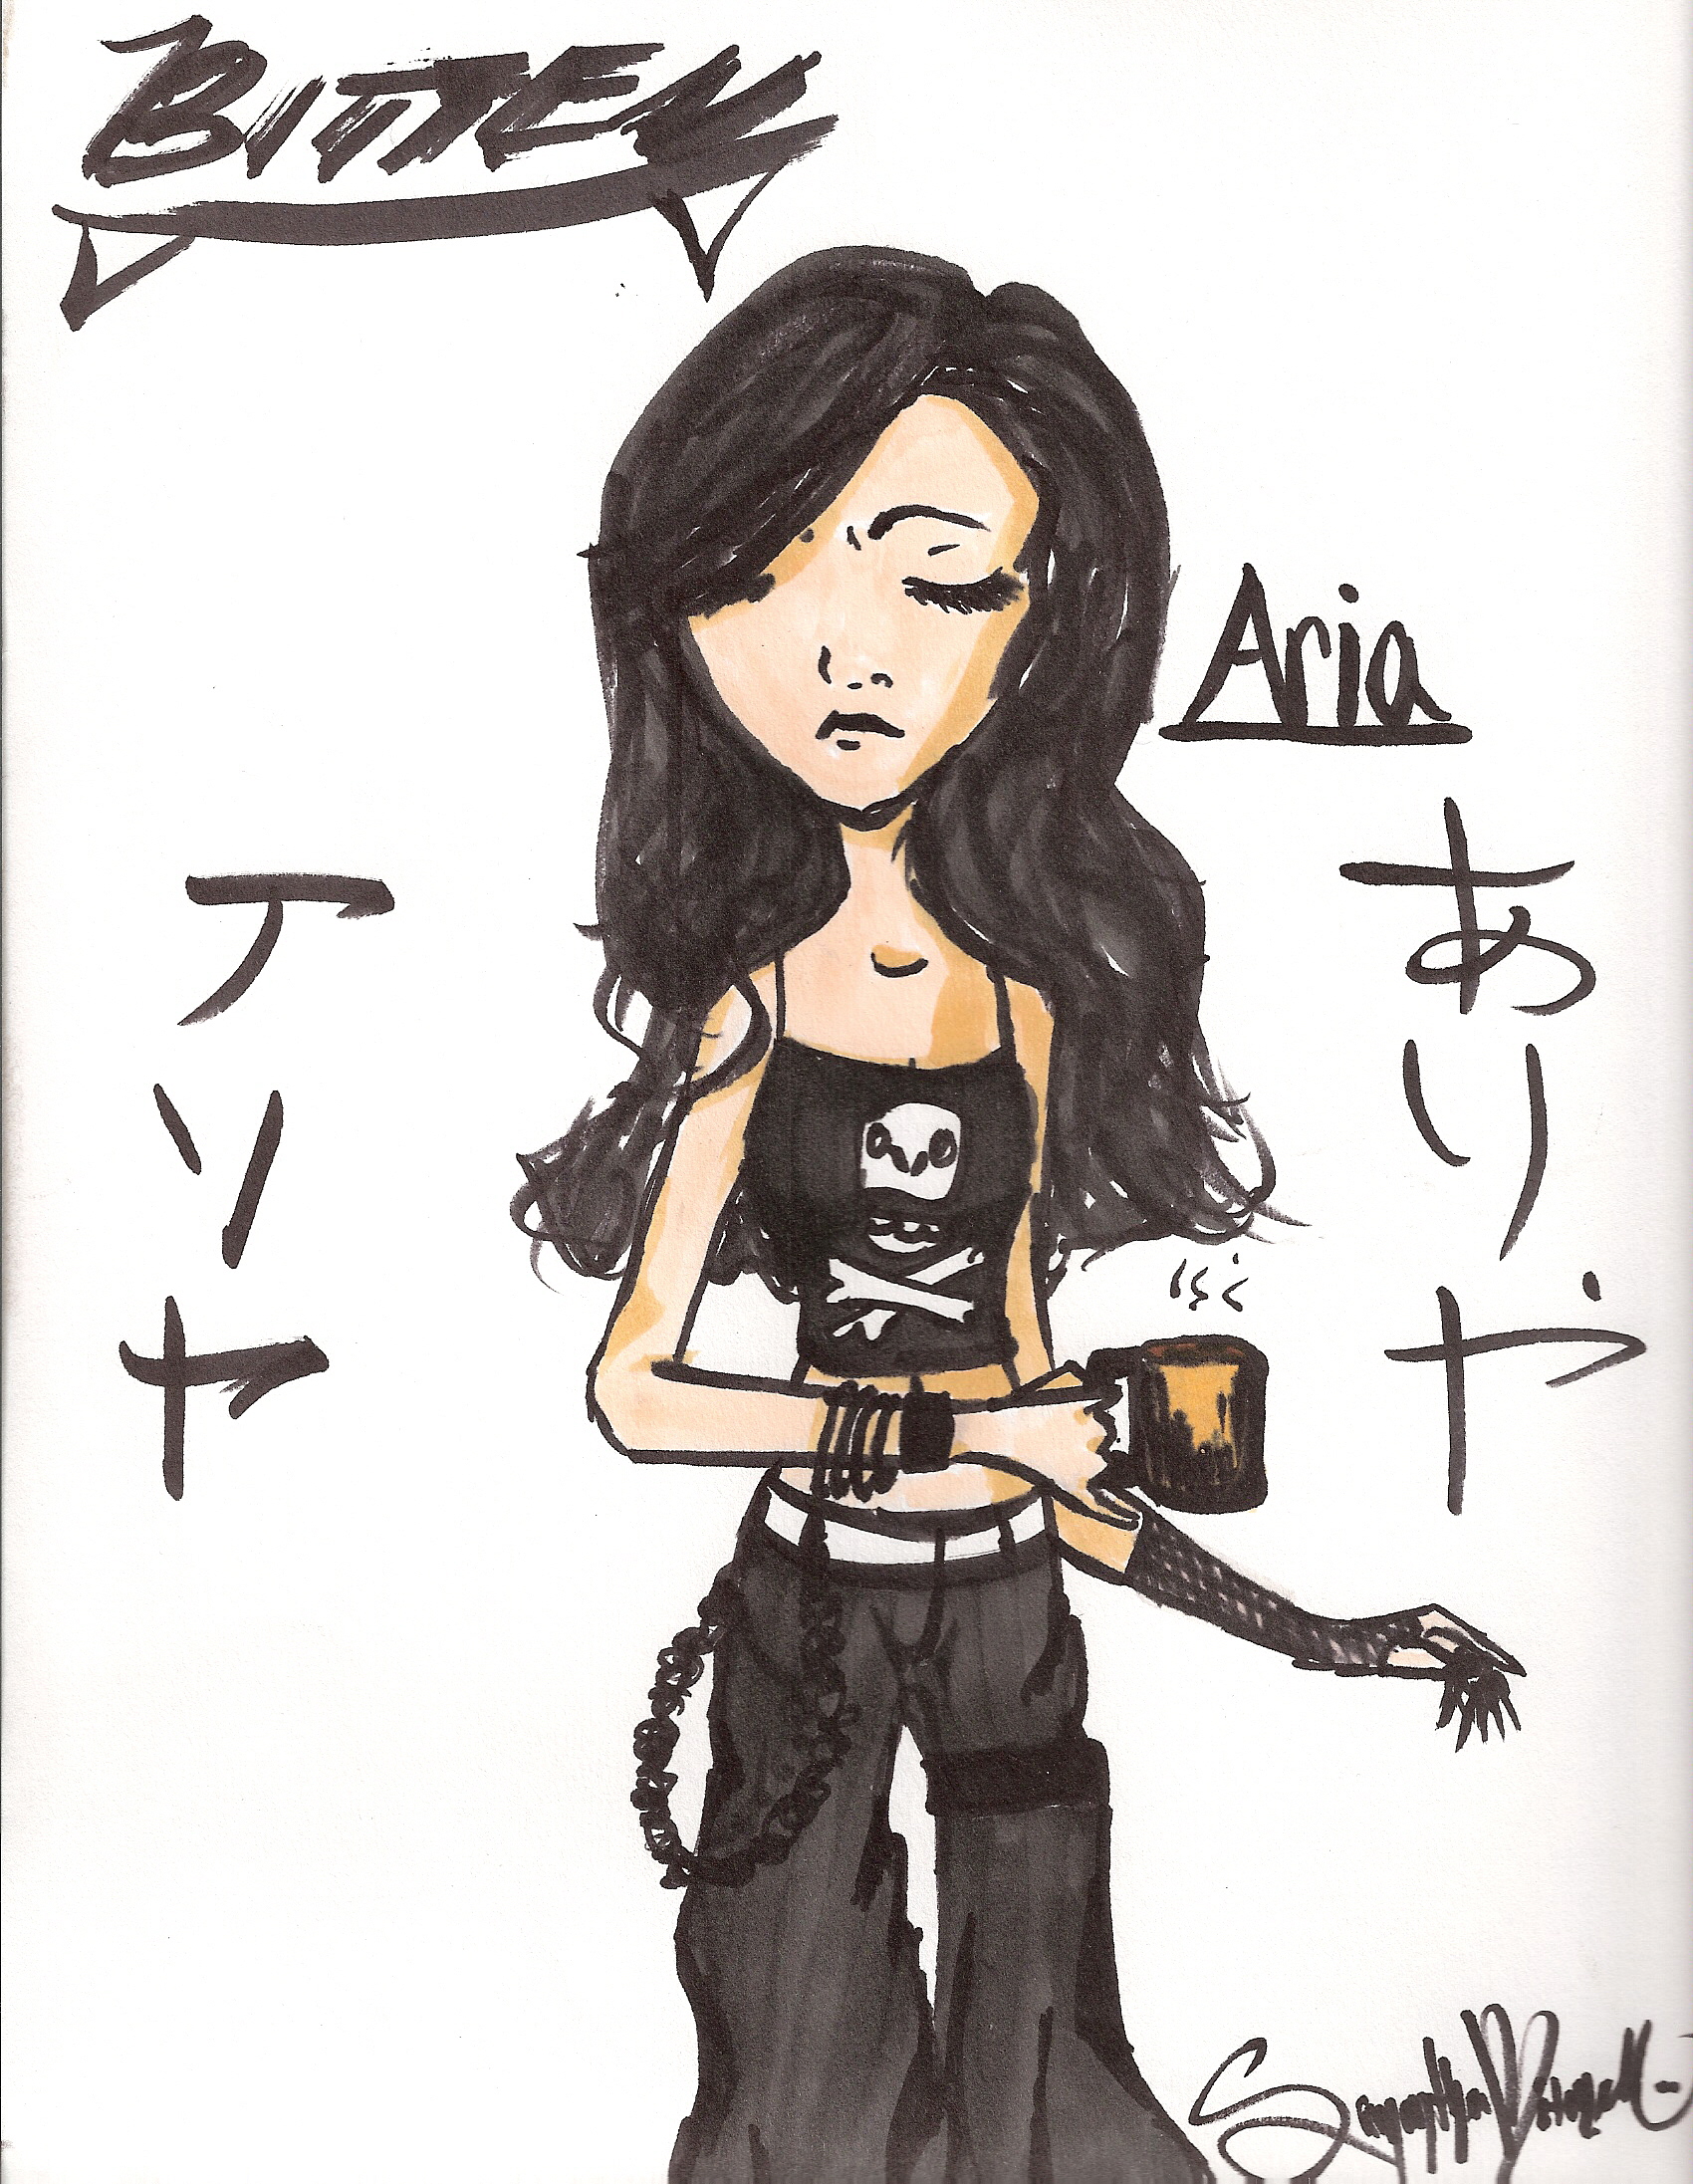 Aria, OC, from my manga "Bitten" by Sammiy303